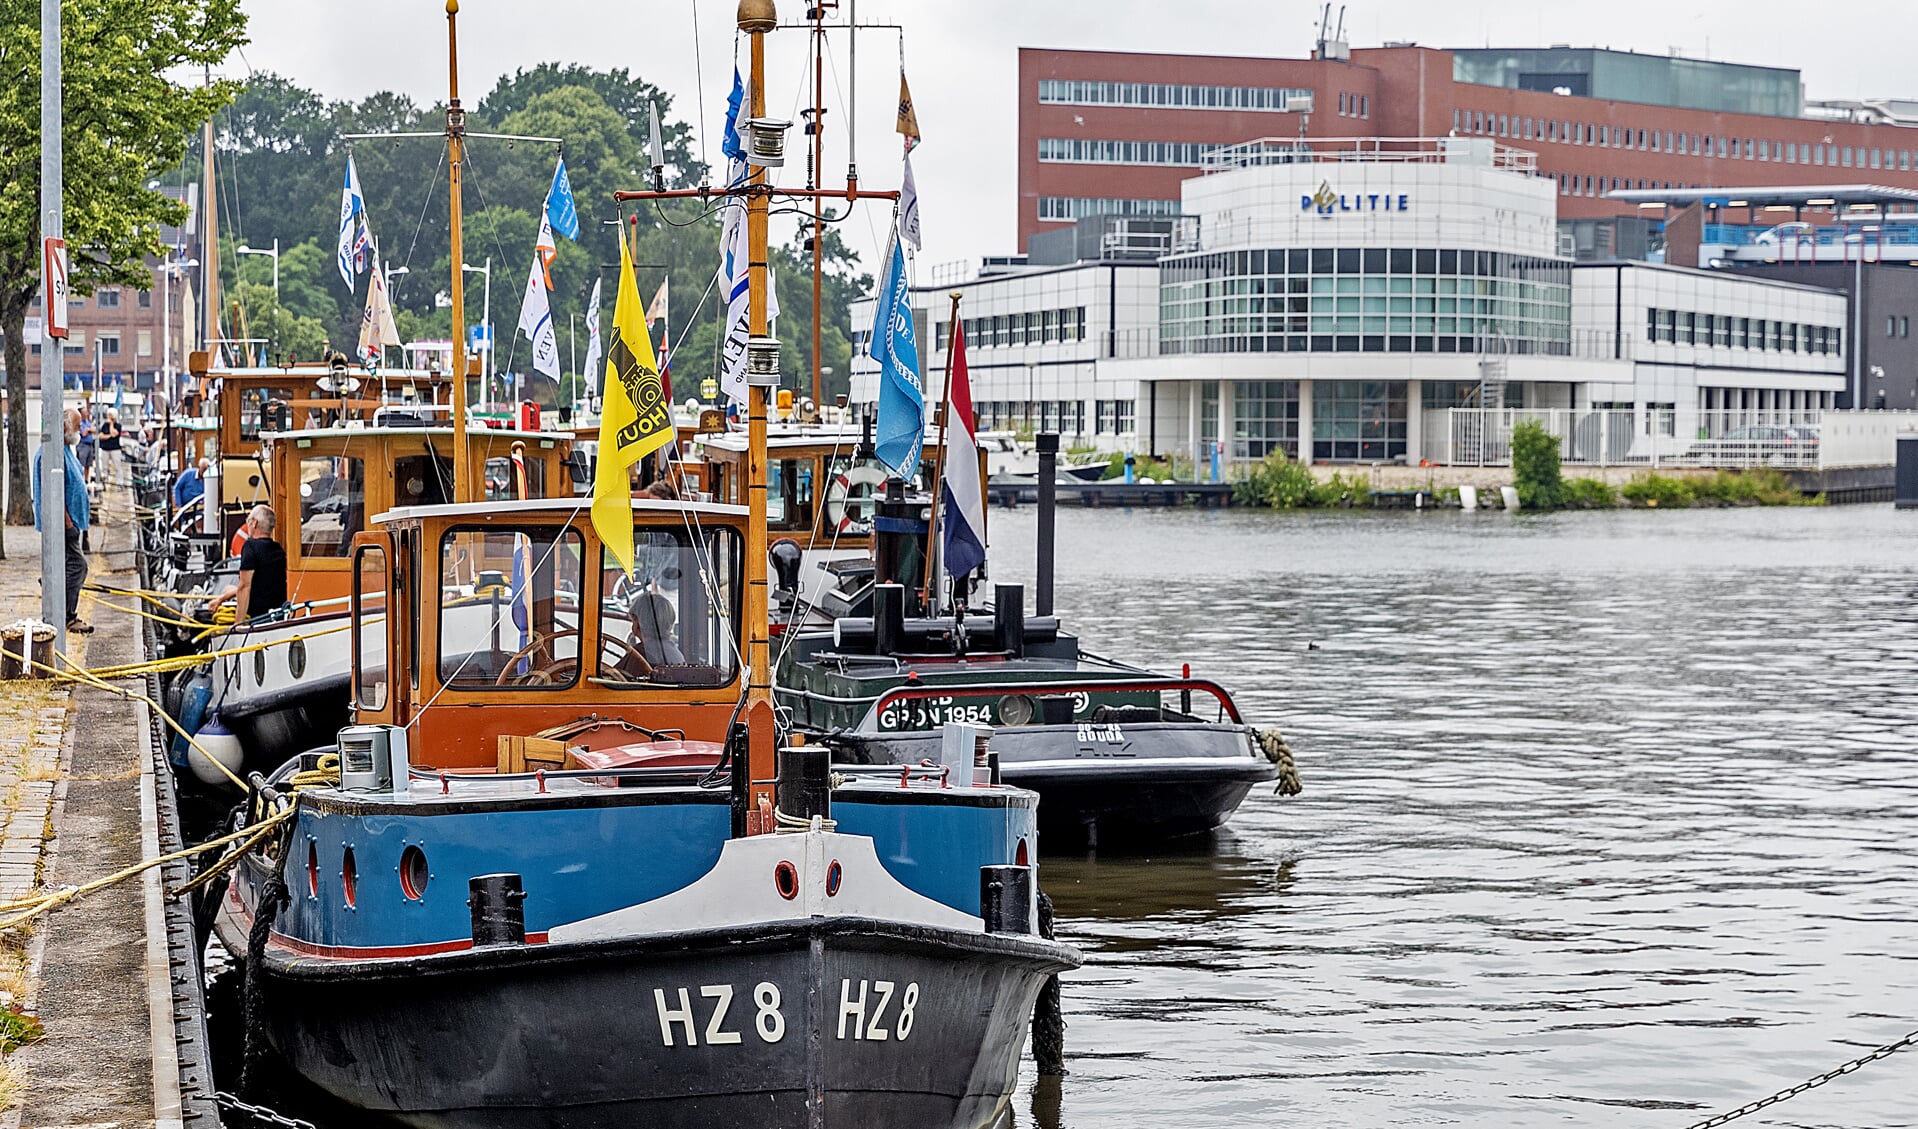 Historische schepen doen Alkmaar aan, voor één nachtje. De boten zijn onderweg naar Sail Den Helder.